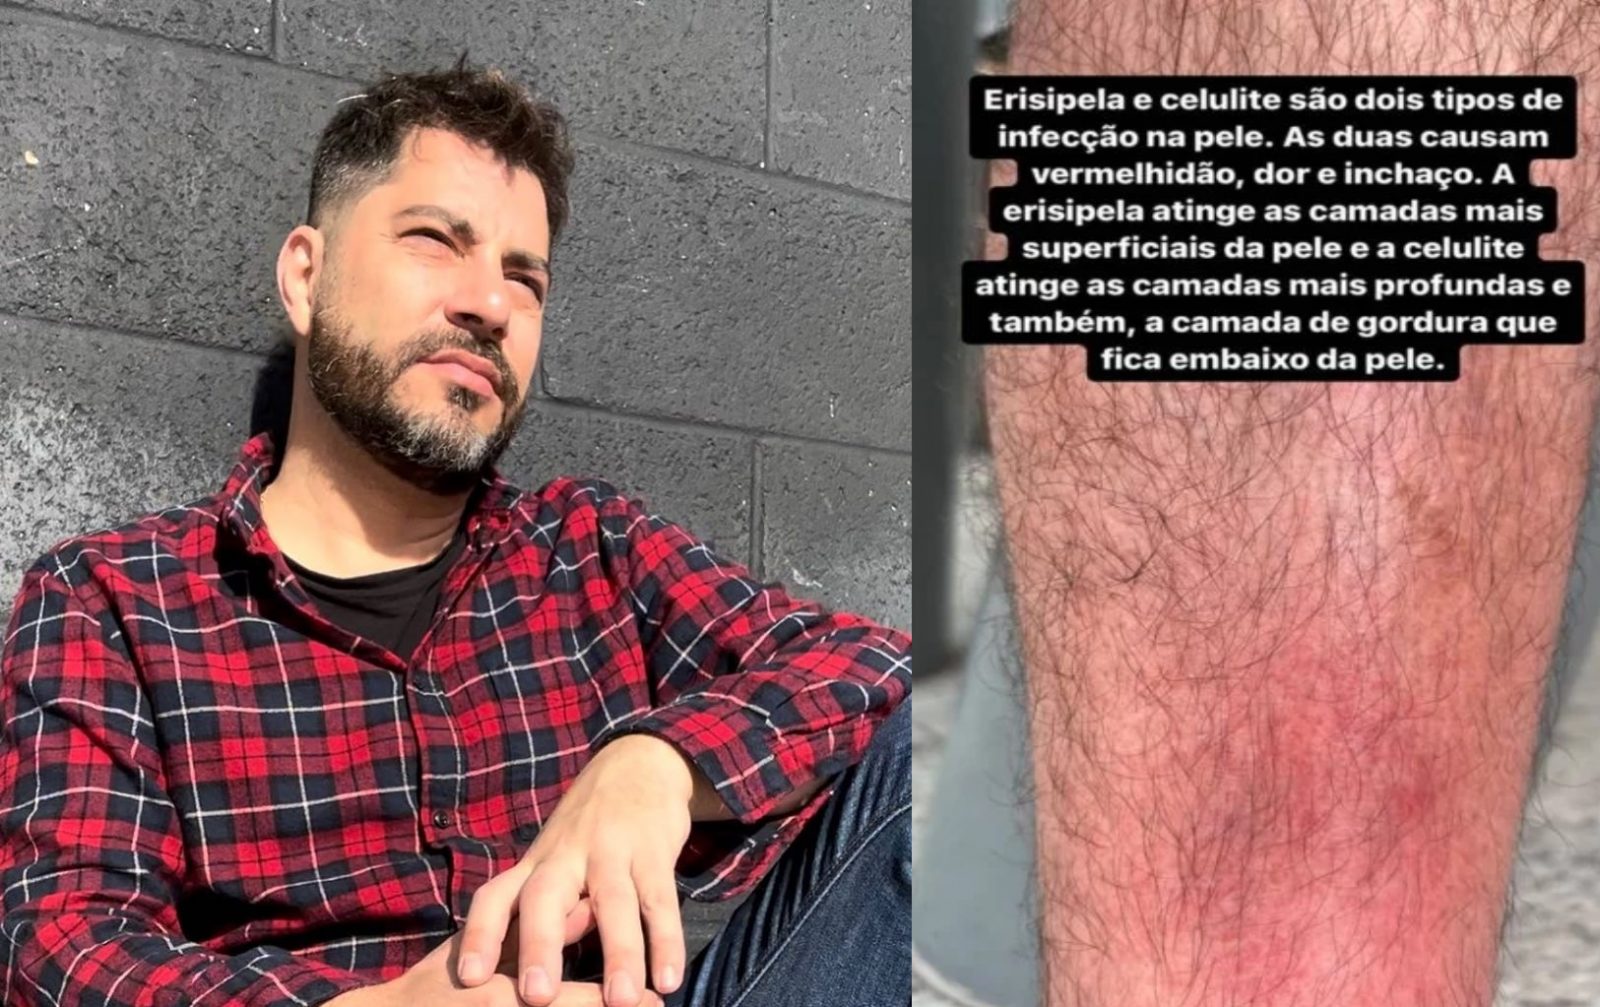 Jornalista Evaristo Costa e imagem de sua perna que ele divulgou nas redes sociais ao falar de erisipela e celulite